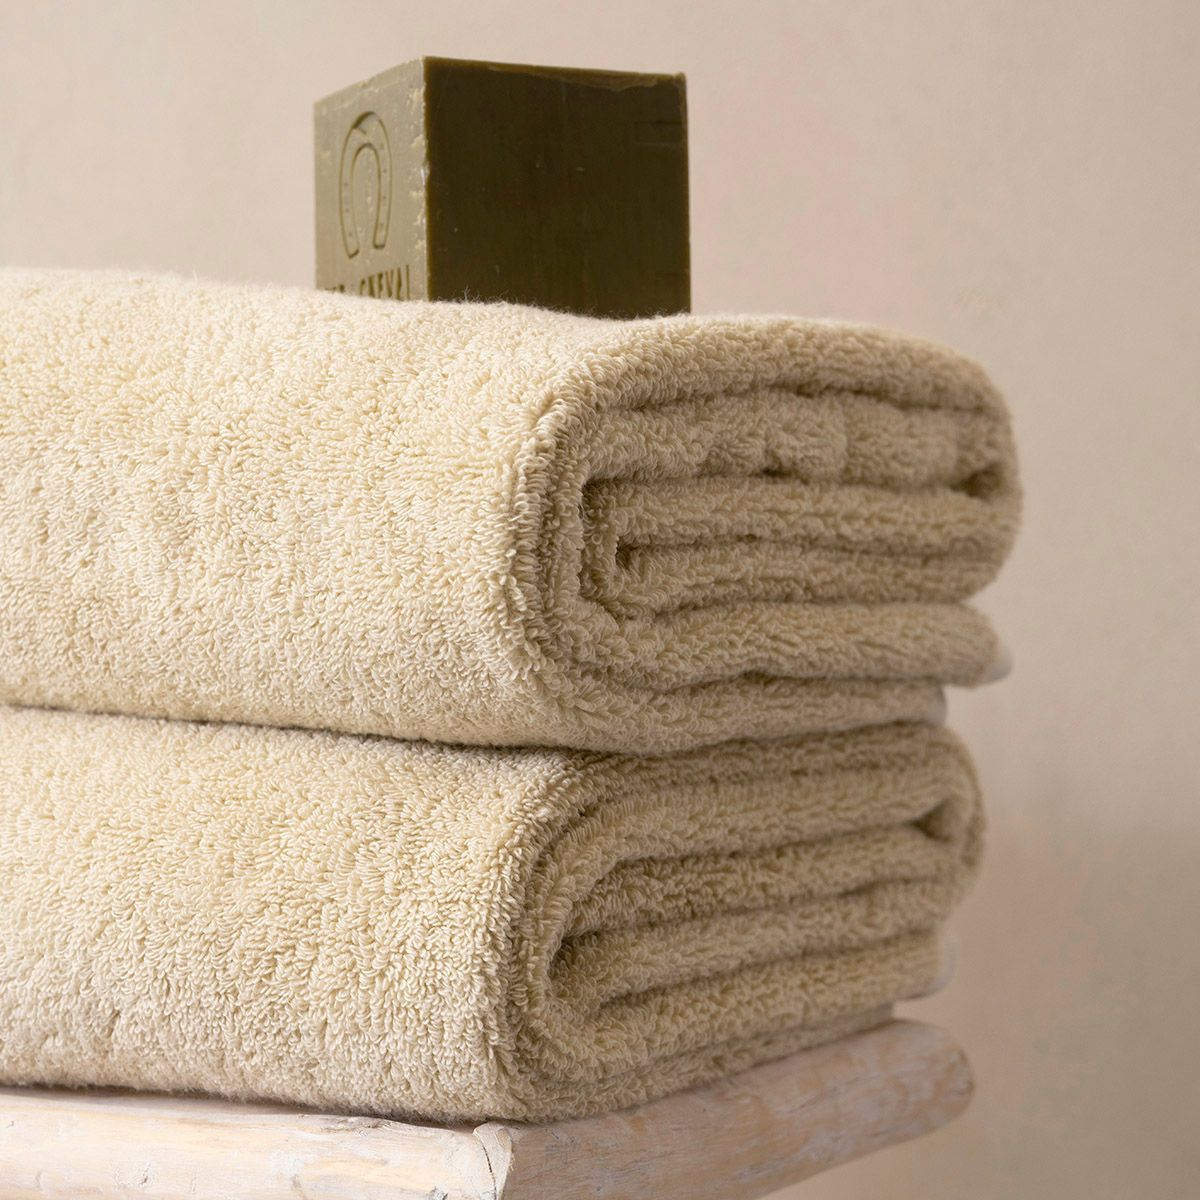 Bath Towel - Argile Beige Towels by Le Jacquard Français | Luxury Bath Linens at Fig Linens and Home